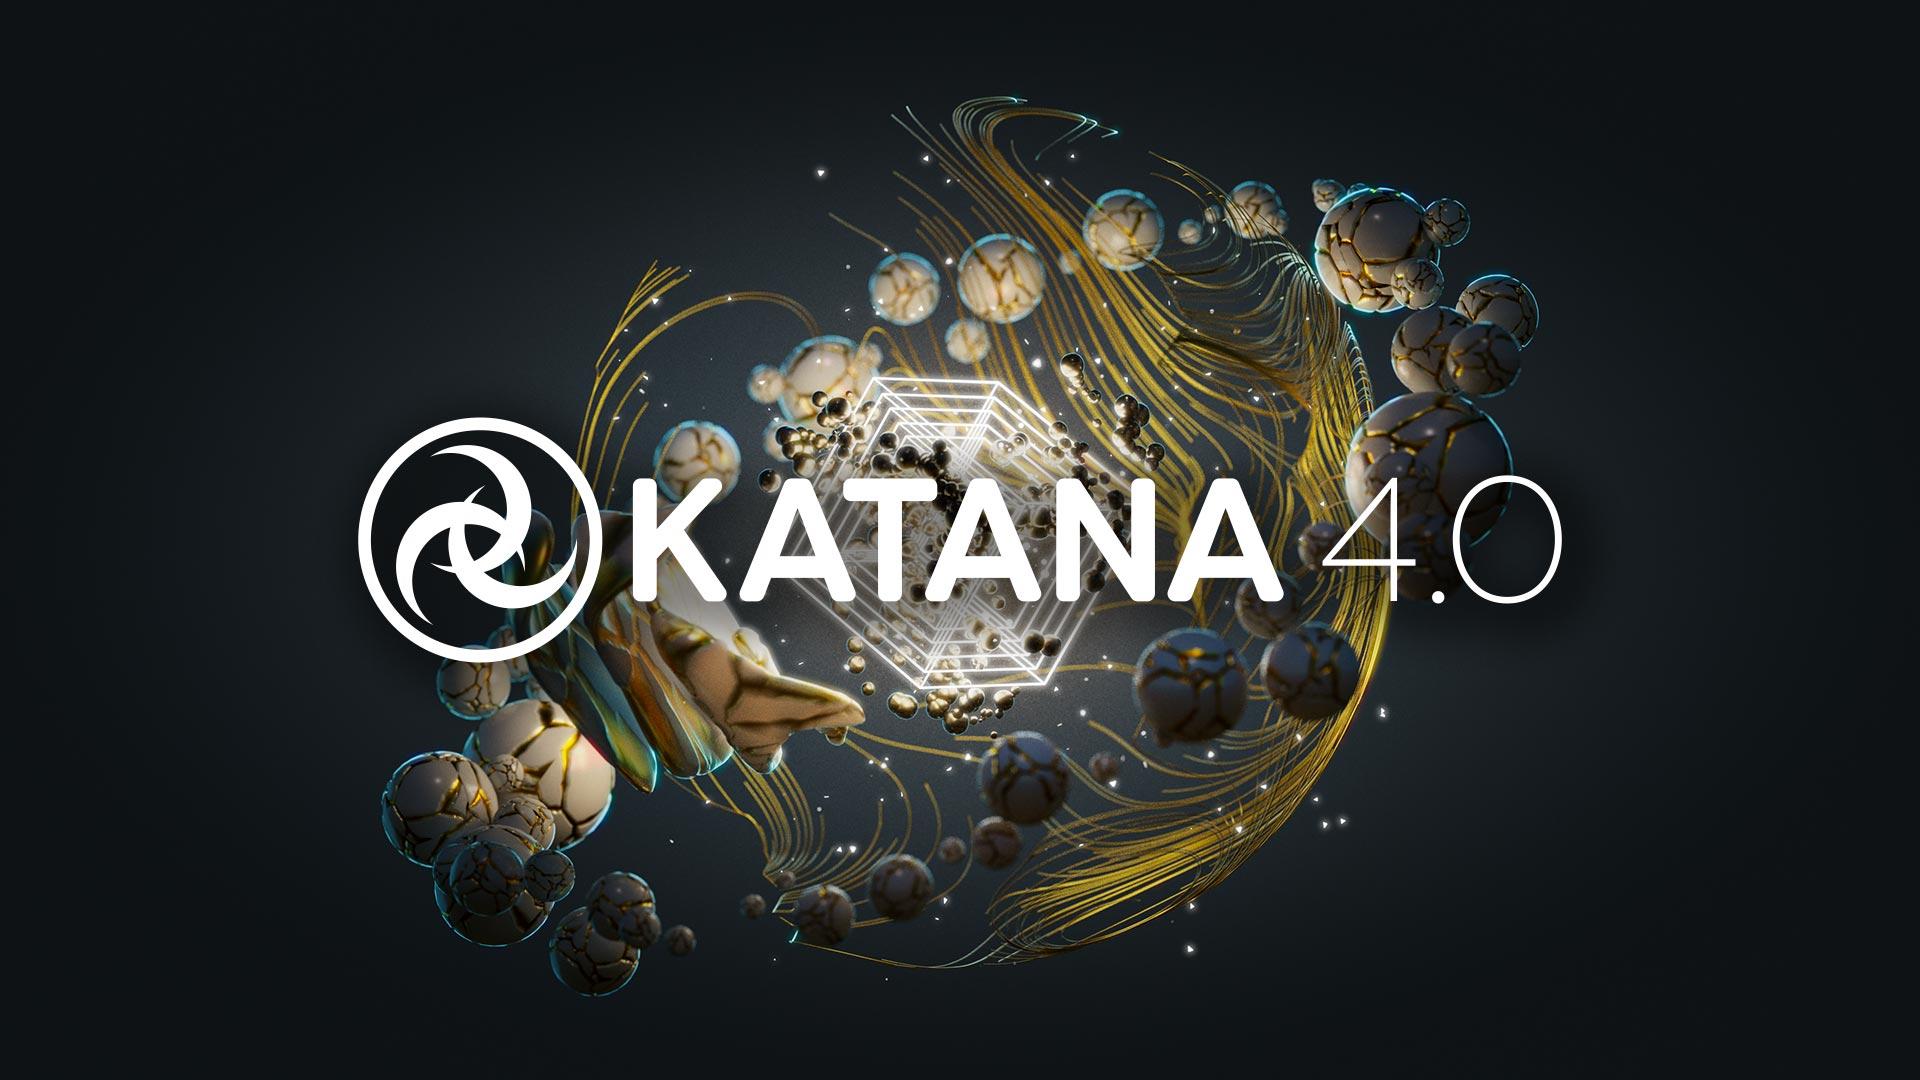 Katana release 4.0